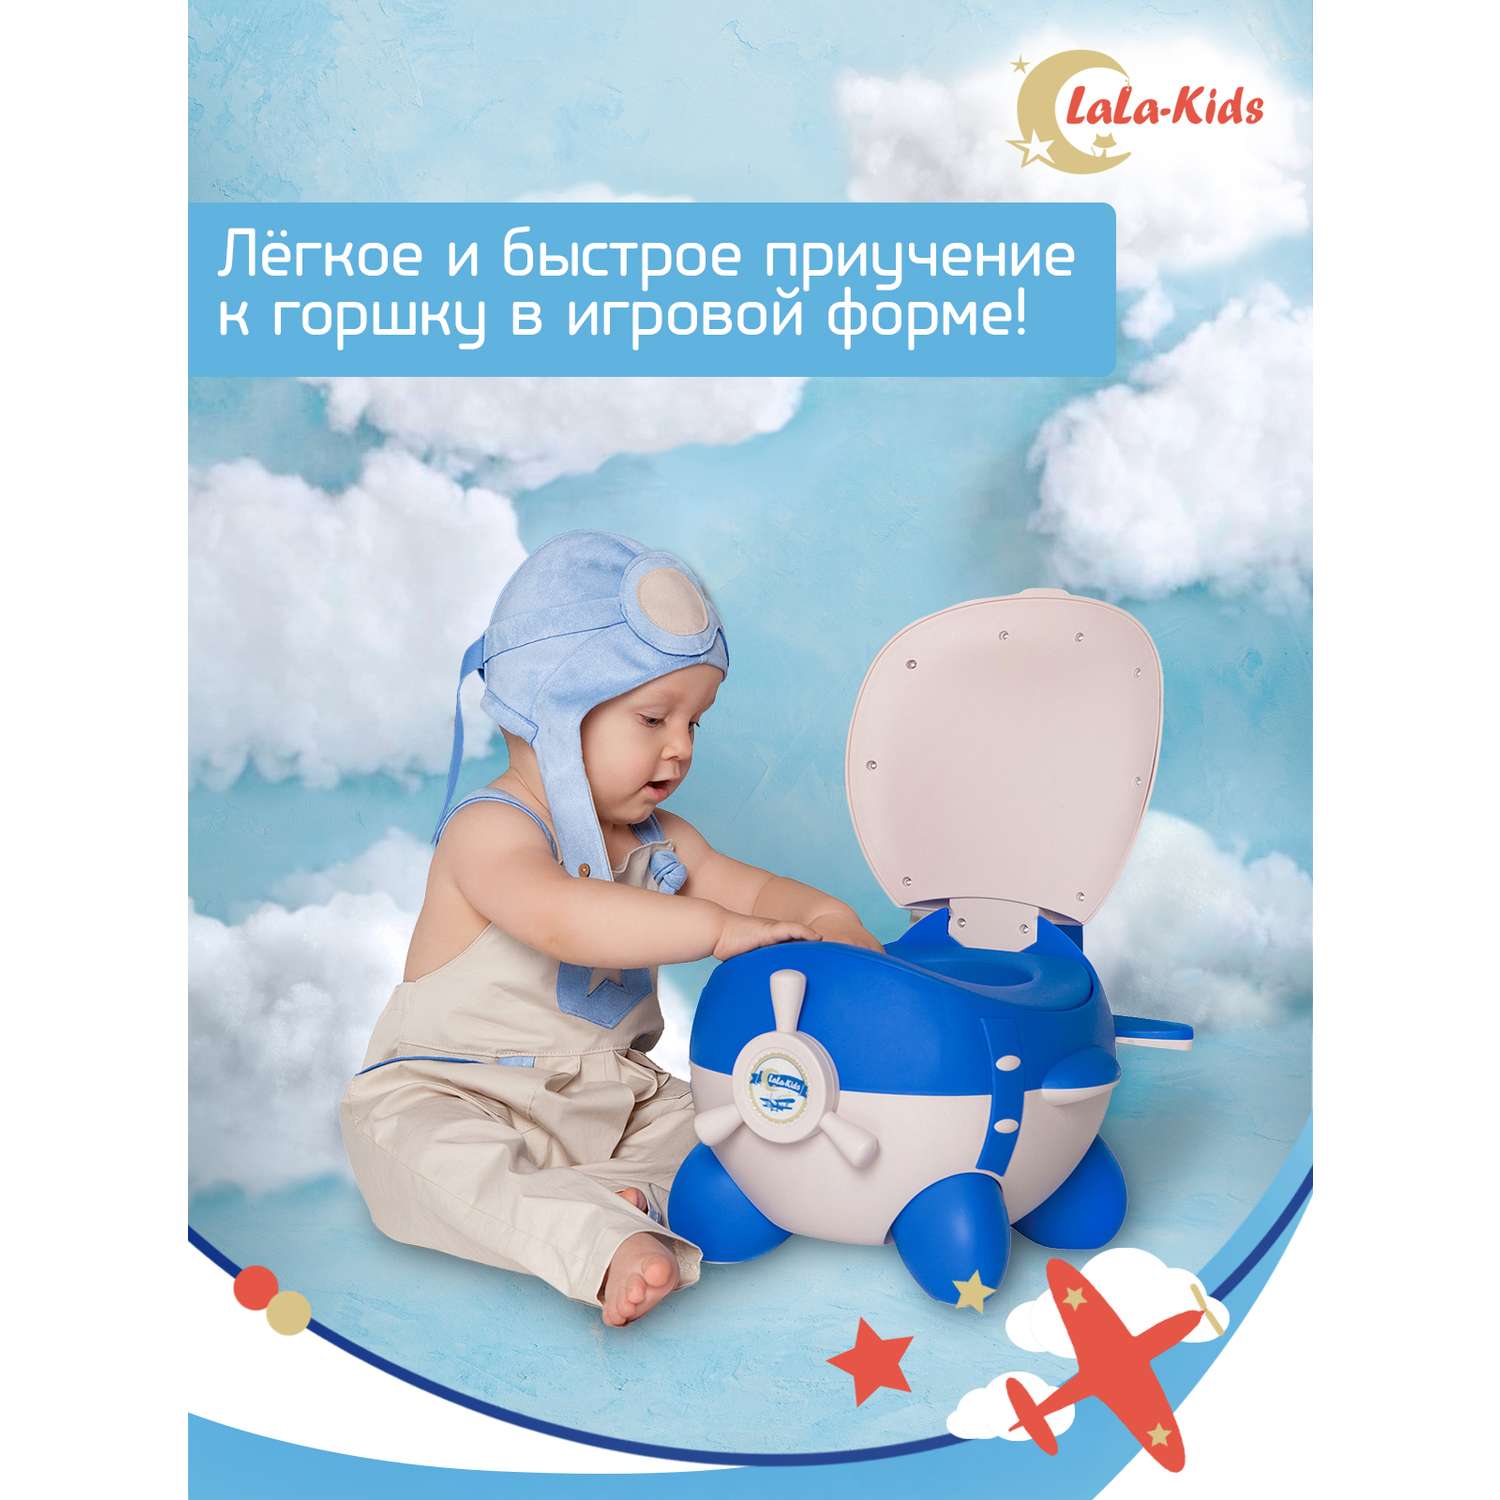 Горшок LaLa-Kids с мягким сиденьем Самолет голубой - фото 7